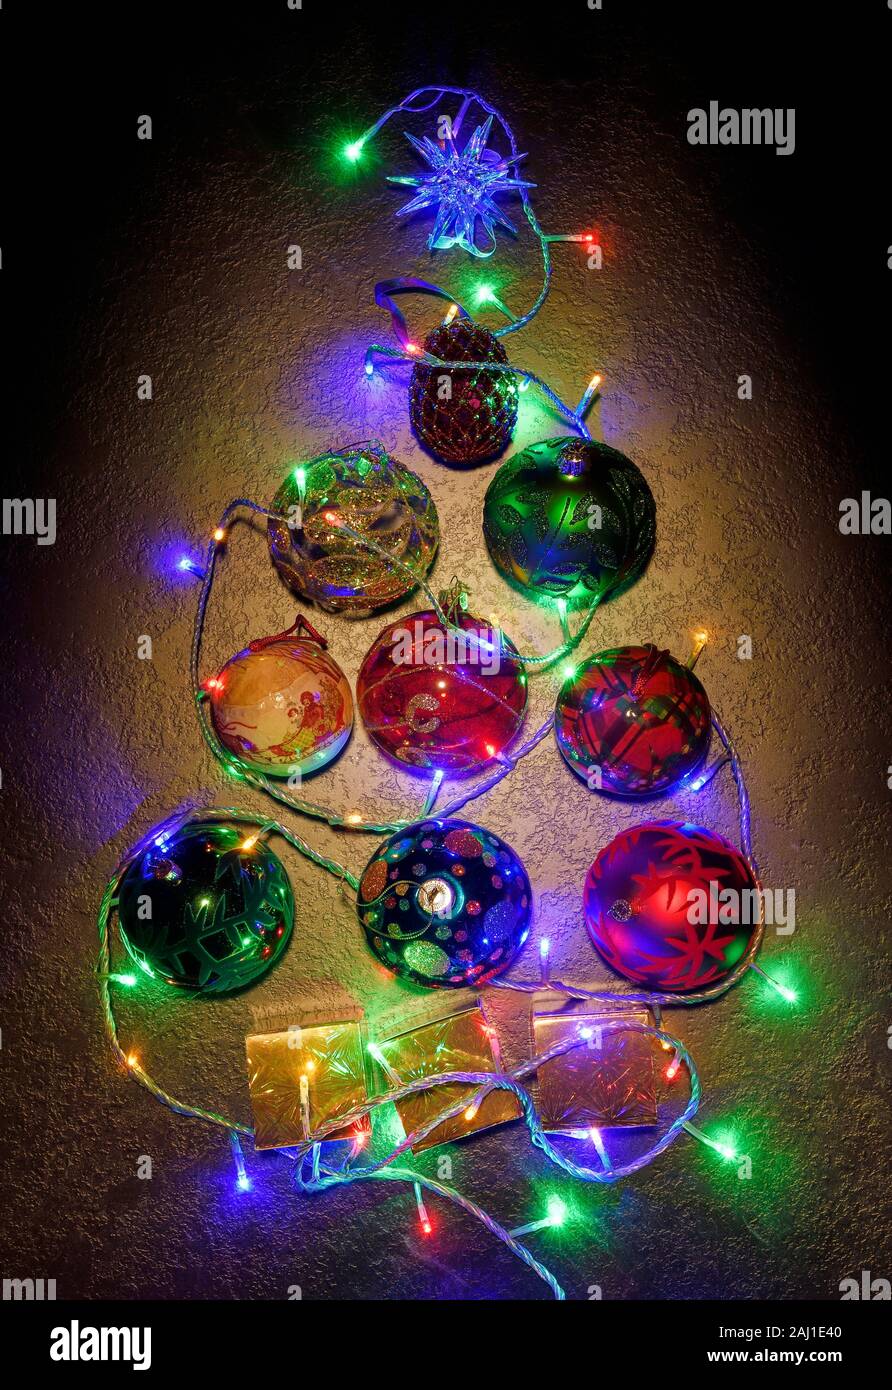 Planos generales de laicos un árbol de Navidad forma compuesta de chucherías y las luces de hadas Foto de stock